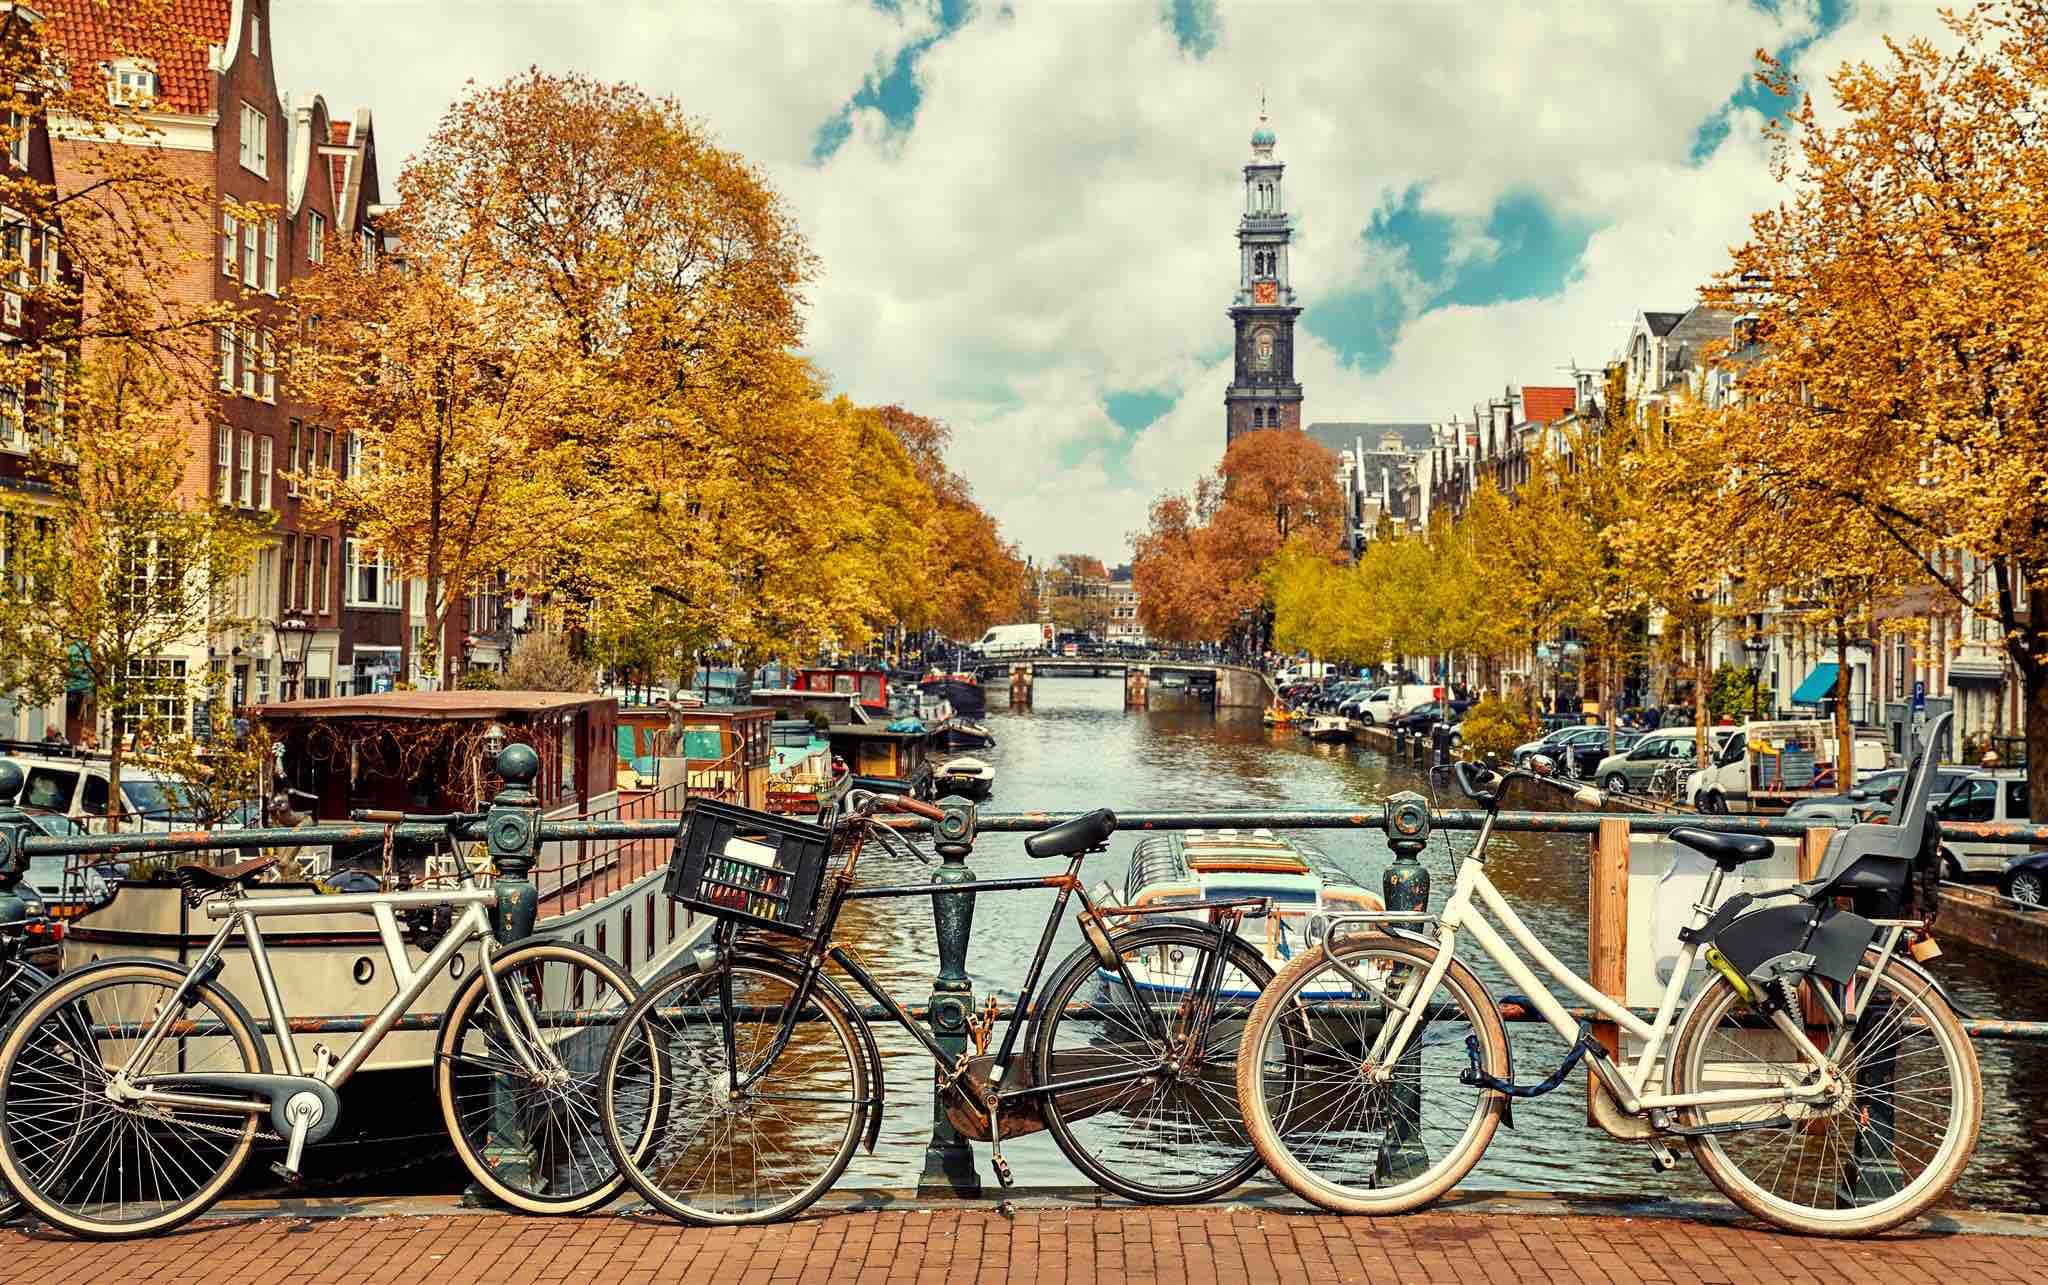 L’Olanda è meta virtuosa per quanto riguarda piste ciclabili e turismo sostenibile. Nimega è stata eletta capitale verde europea 2018